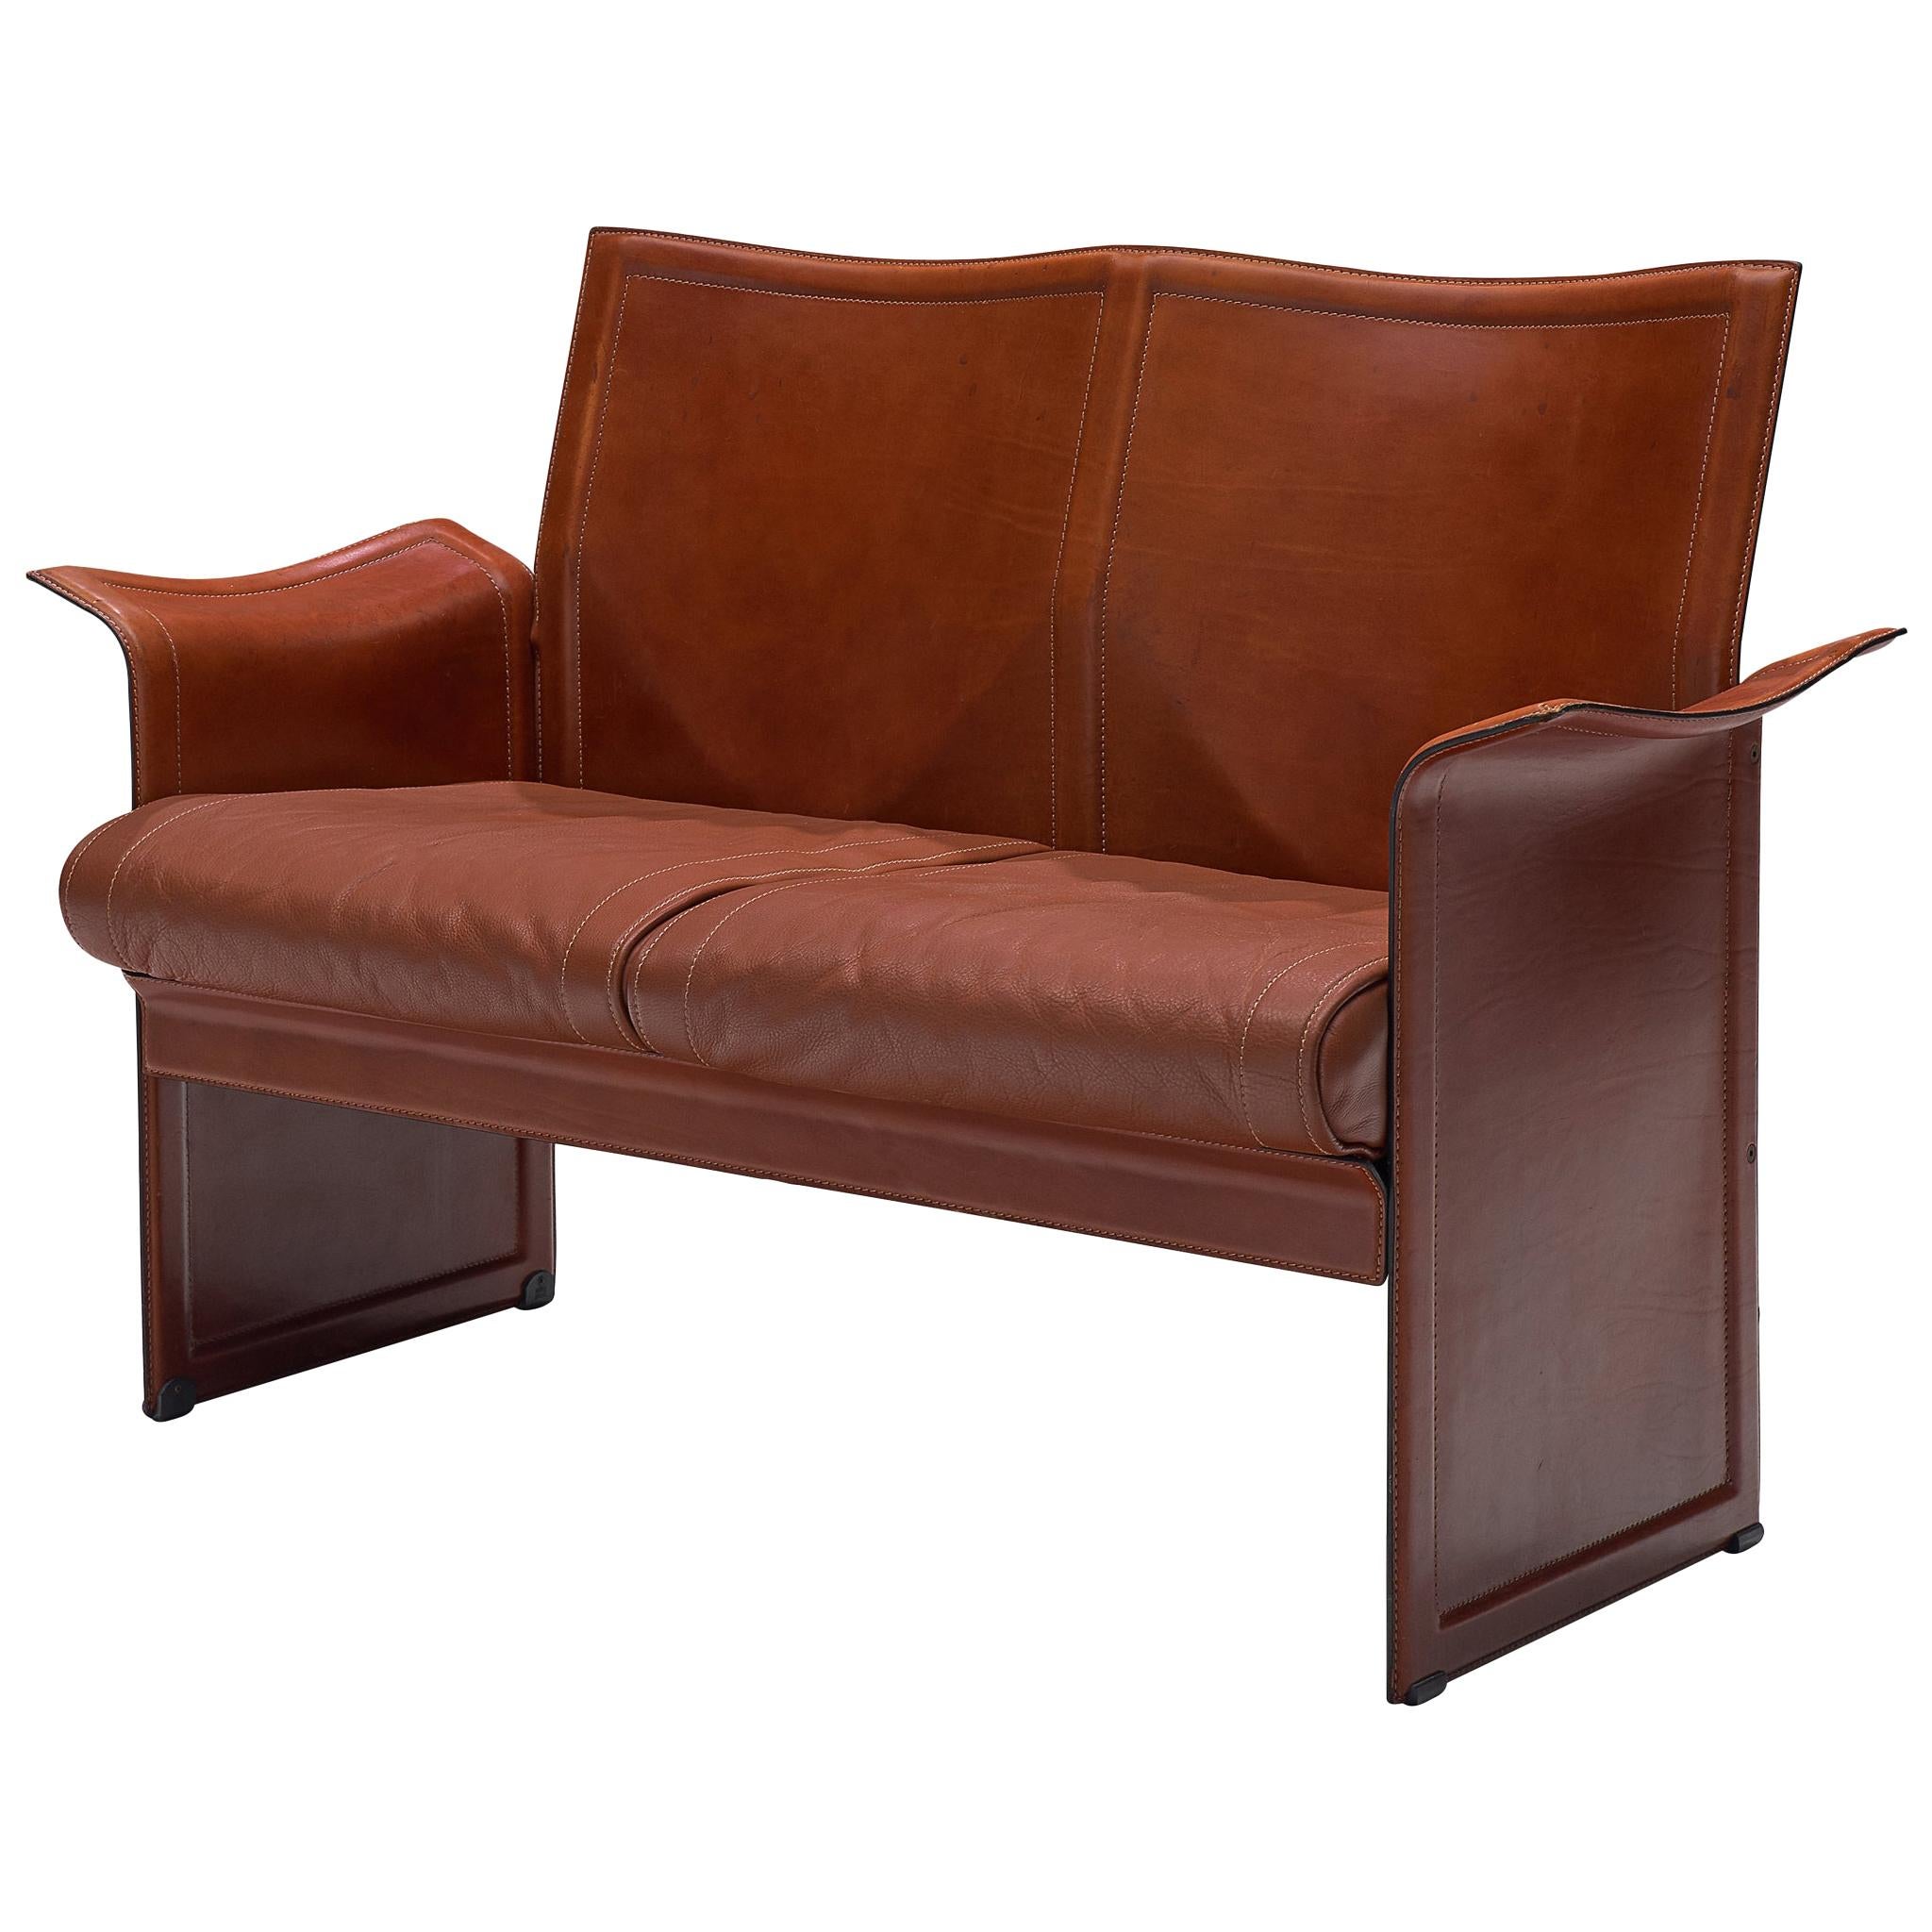 Tito Agnoli 'Korium' Sofa in Cognac Leather